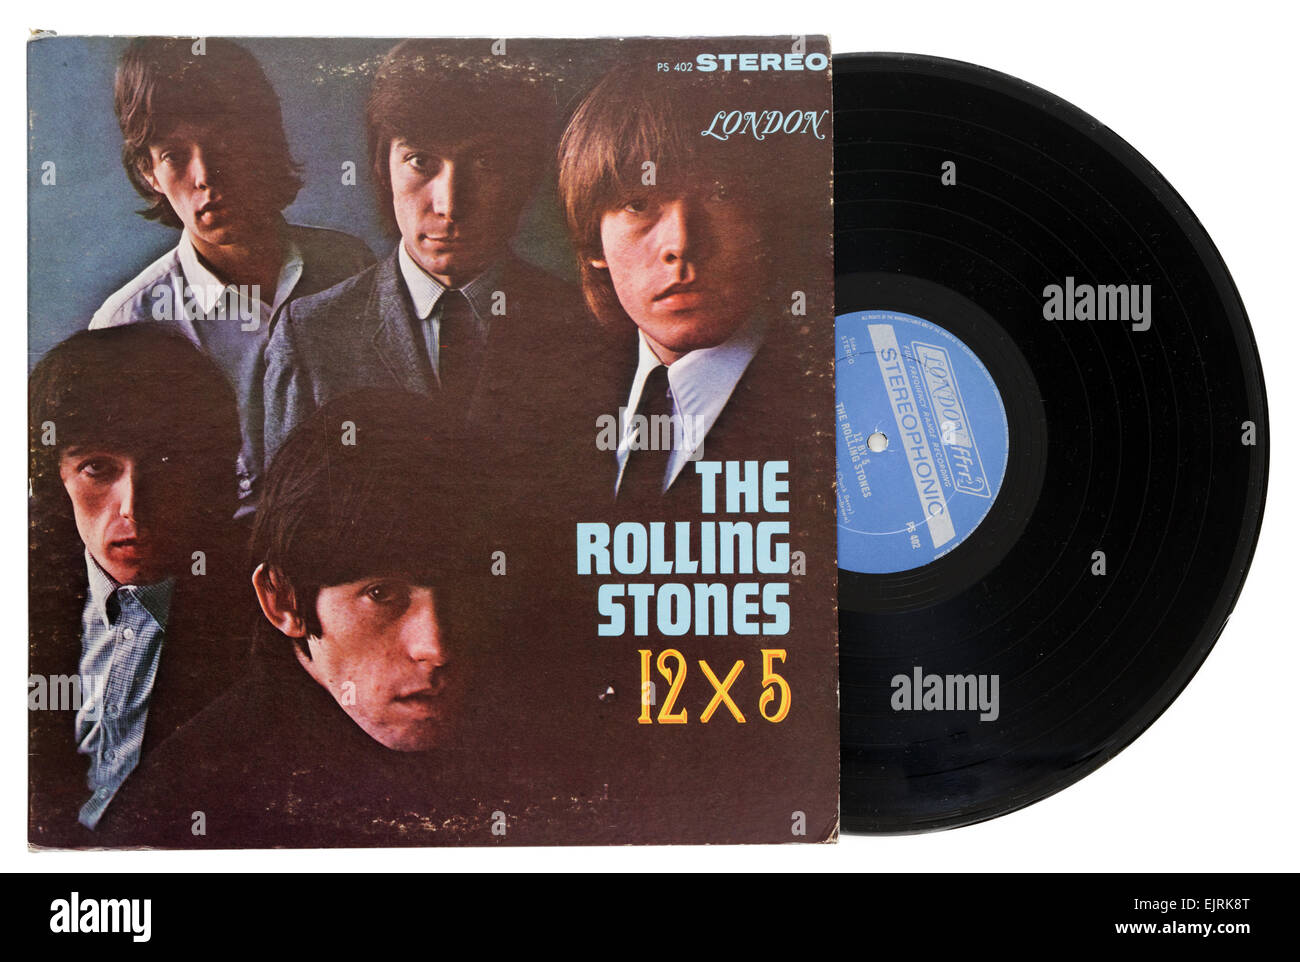 The Rolling Stones 12 x 5 album Stock Photo - Alamy